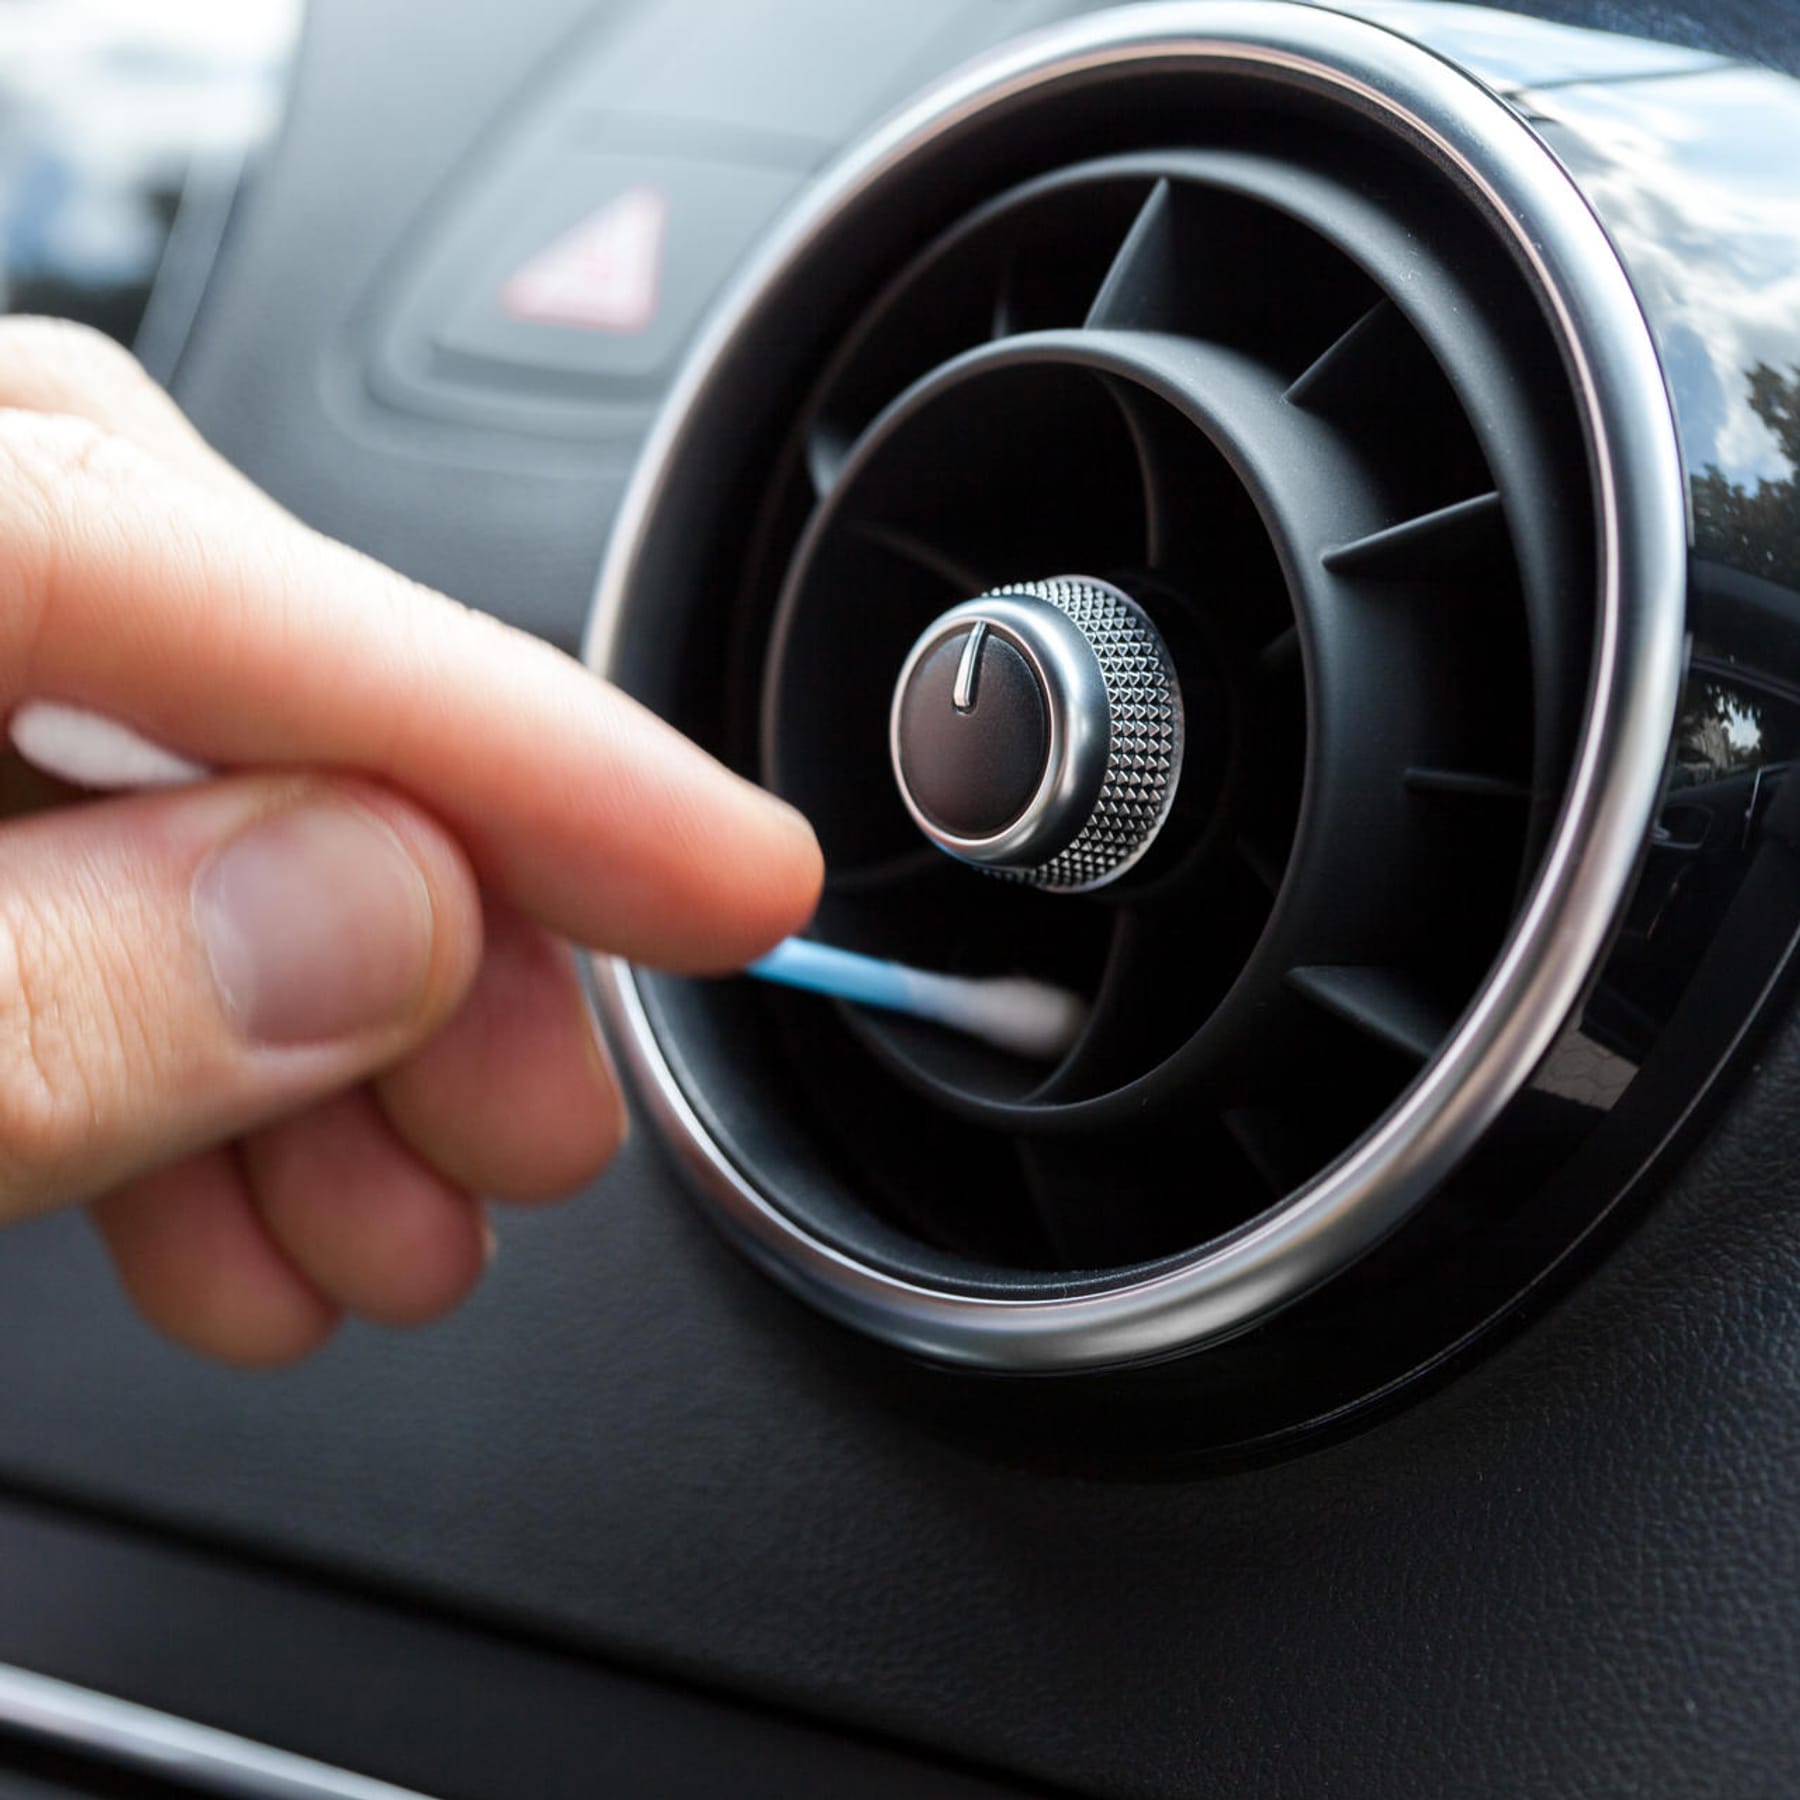 Strenge Regeln bei Auto-Aufkleber: Was erlaubt ist – und was nicht